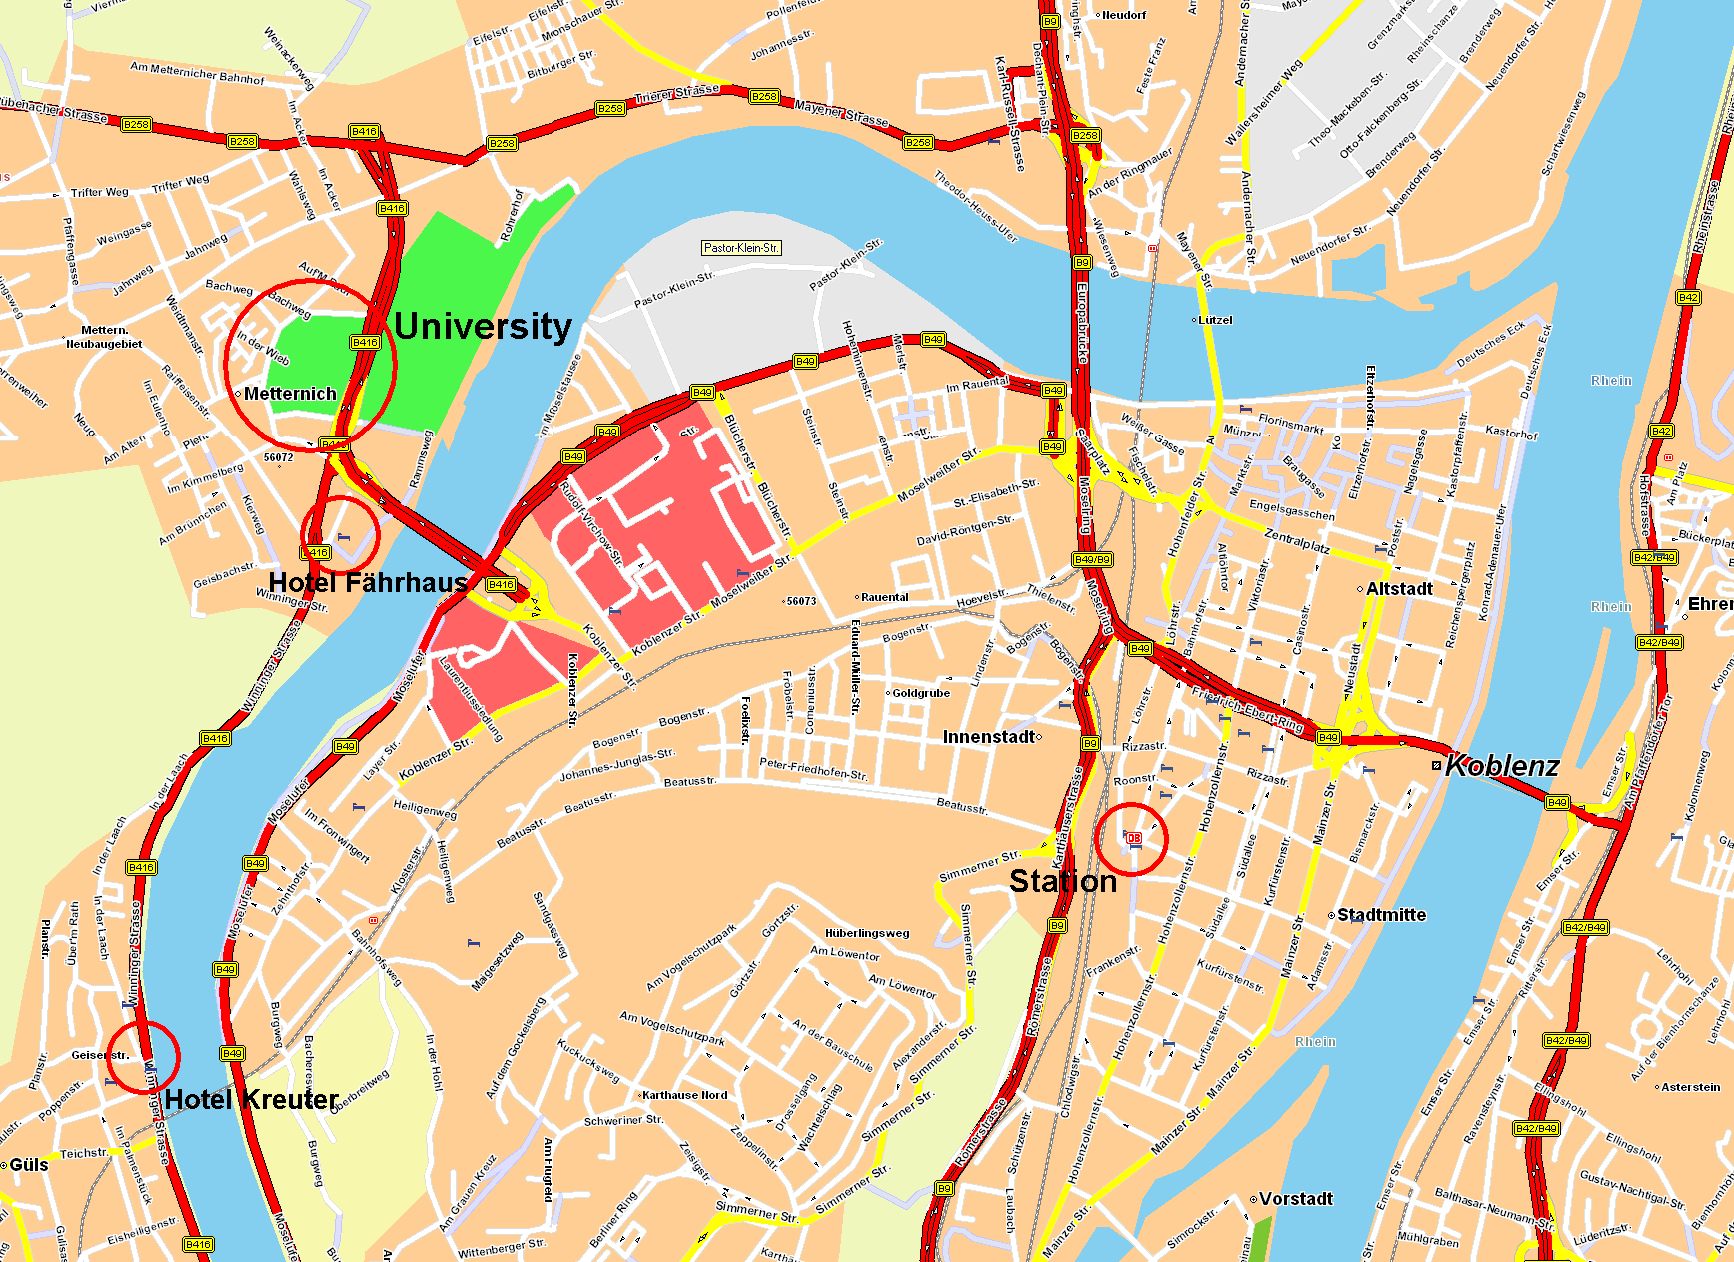 Koblenz center Map